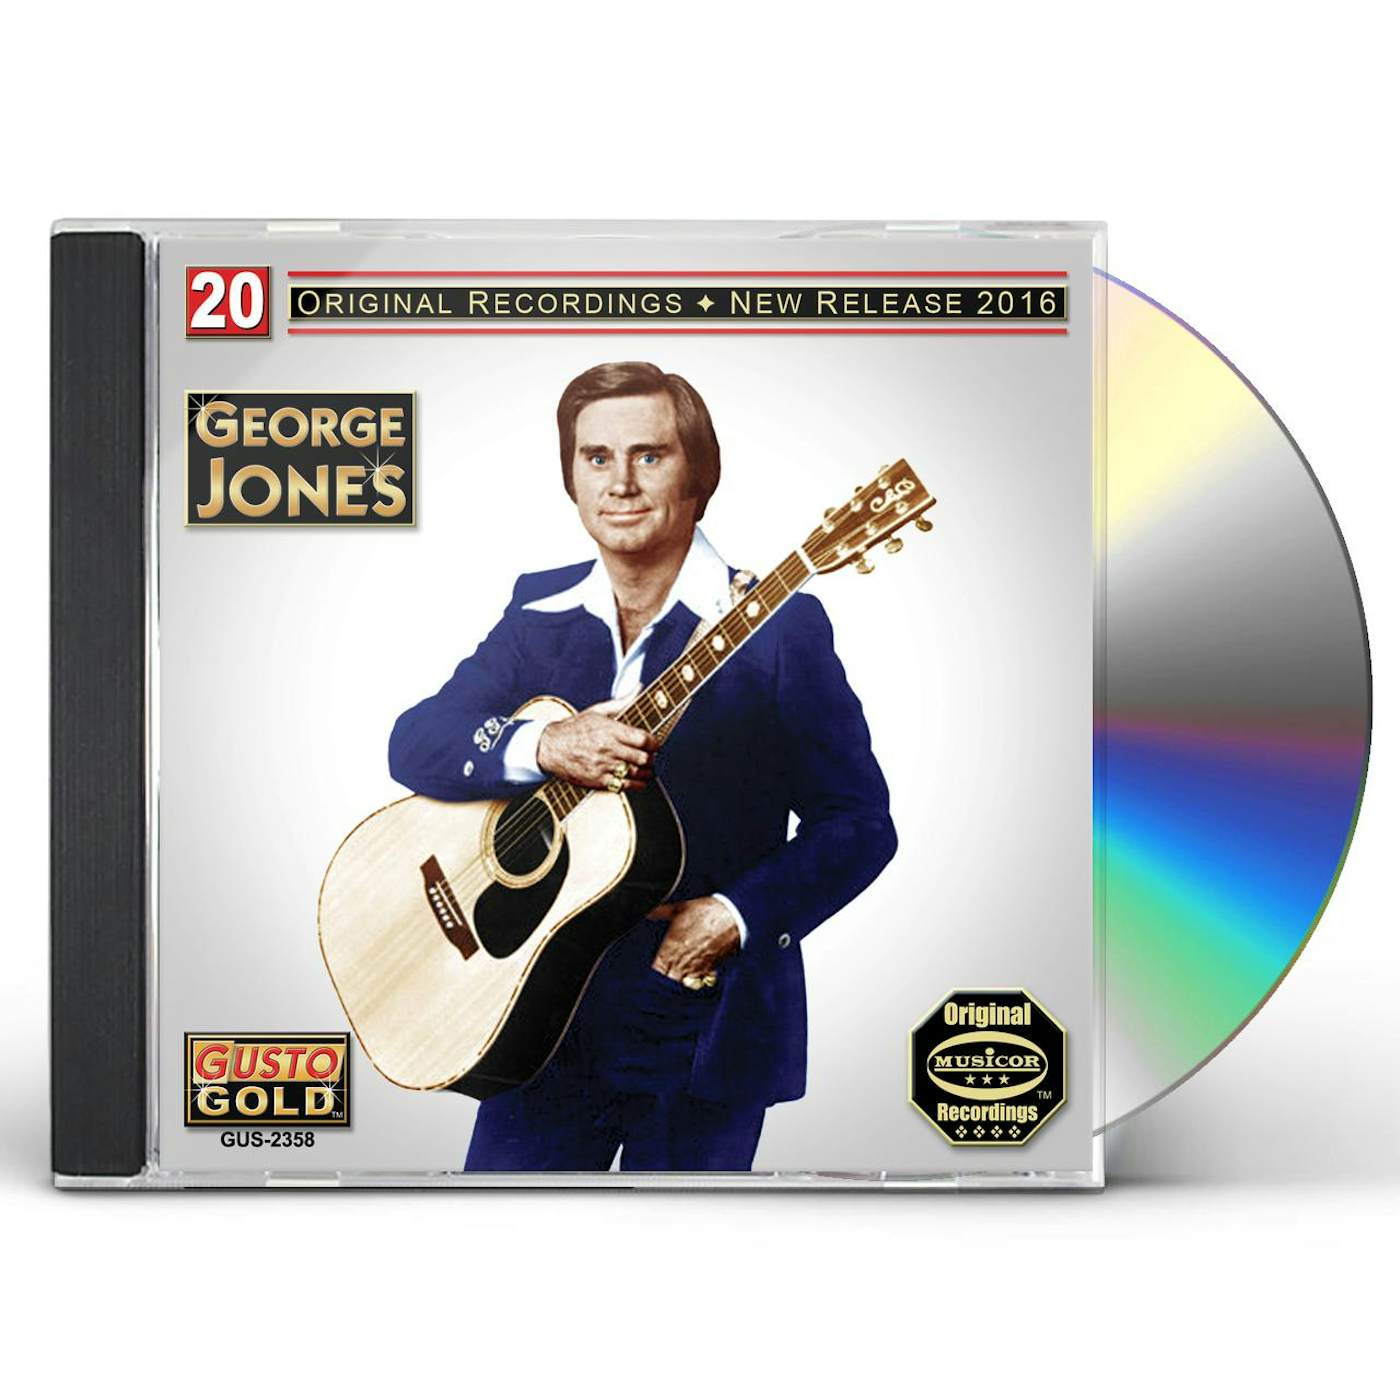 George Jones 20 ORIGINAL RECORDINGS CD